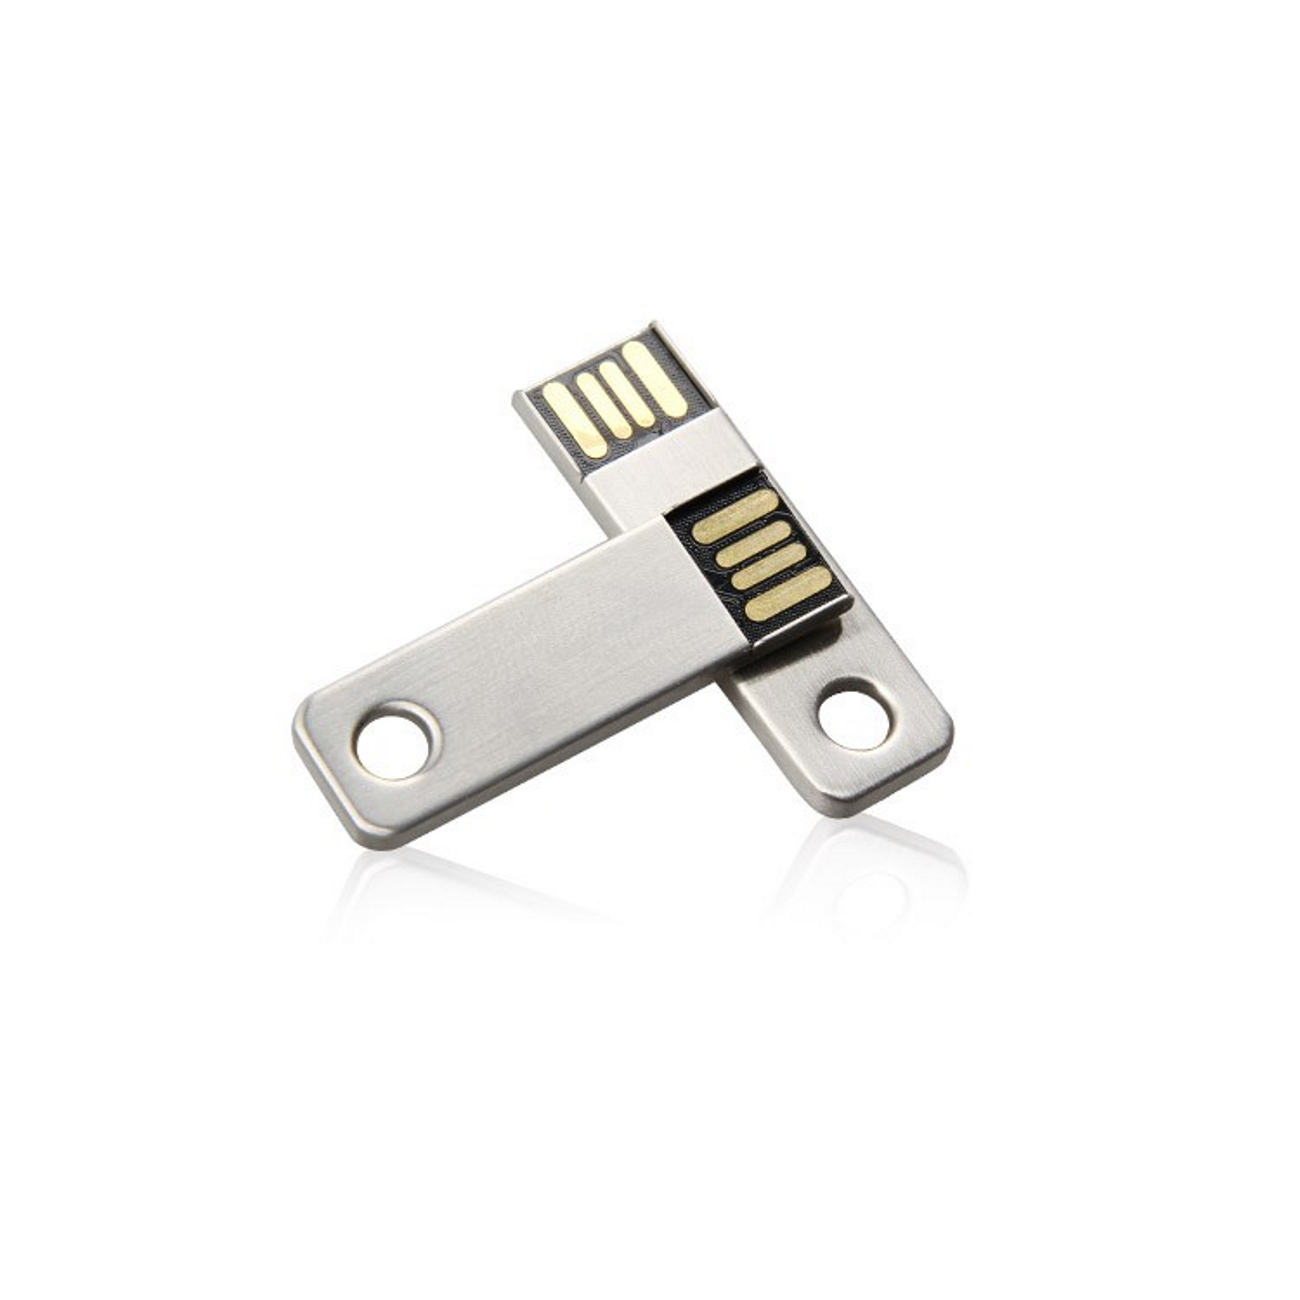 64 GERMANY USB (Silber, Key ®Mini USB-Stick GB)